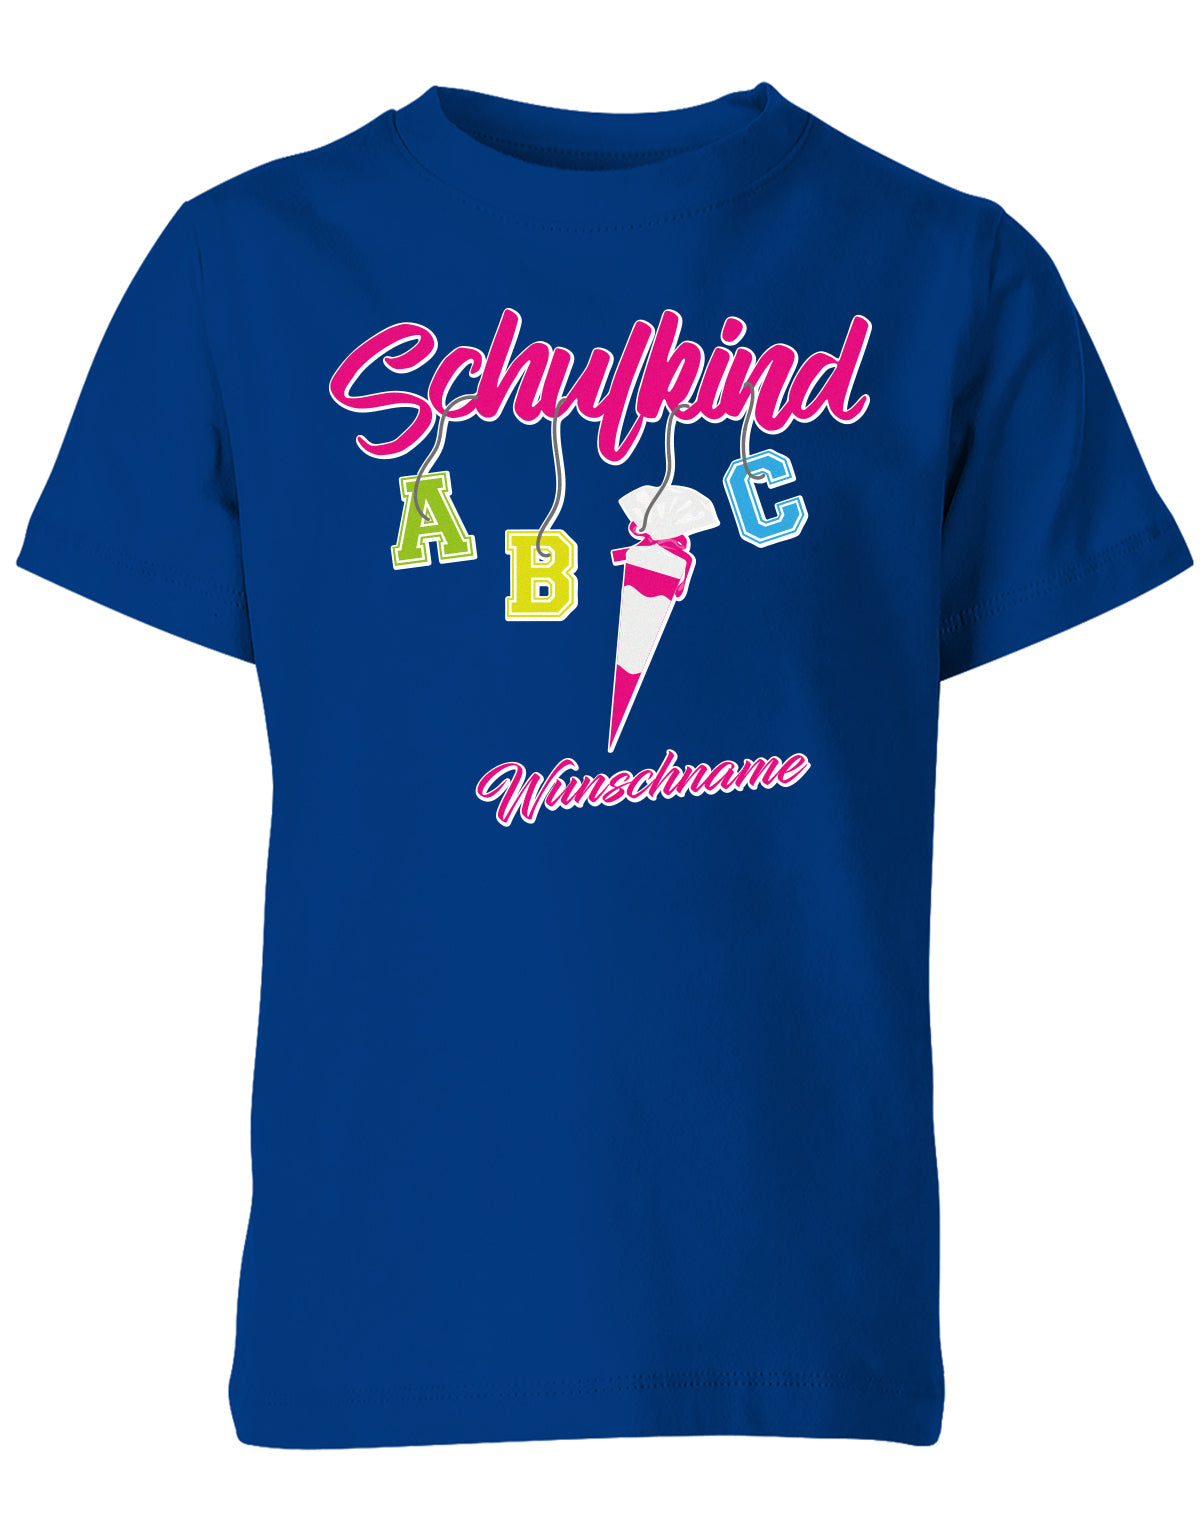 Schulkind ABC Schultüte Wunschname Blau oder Pink Einschulung Kinder T-Shirt Royalblau Pink